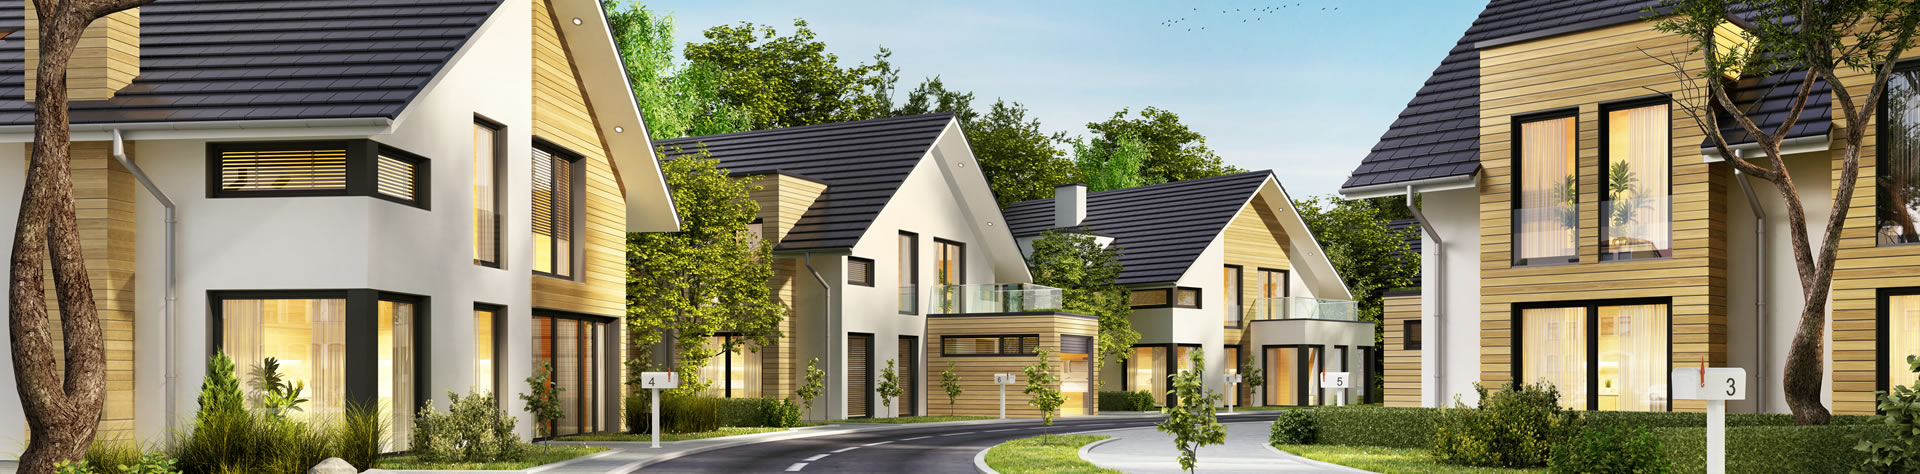 Immobilien kaufen und inverstieren Hauskauf bei Boxberg Neschwitz oder Neukirch